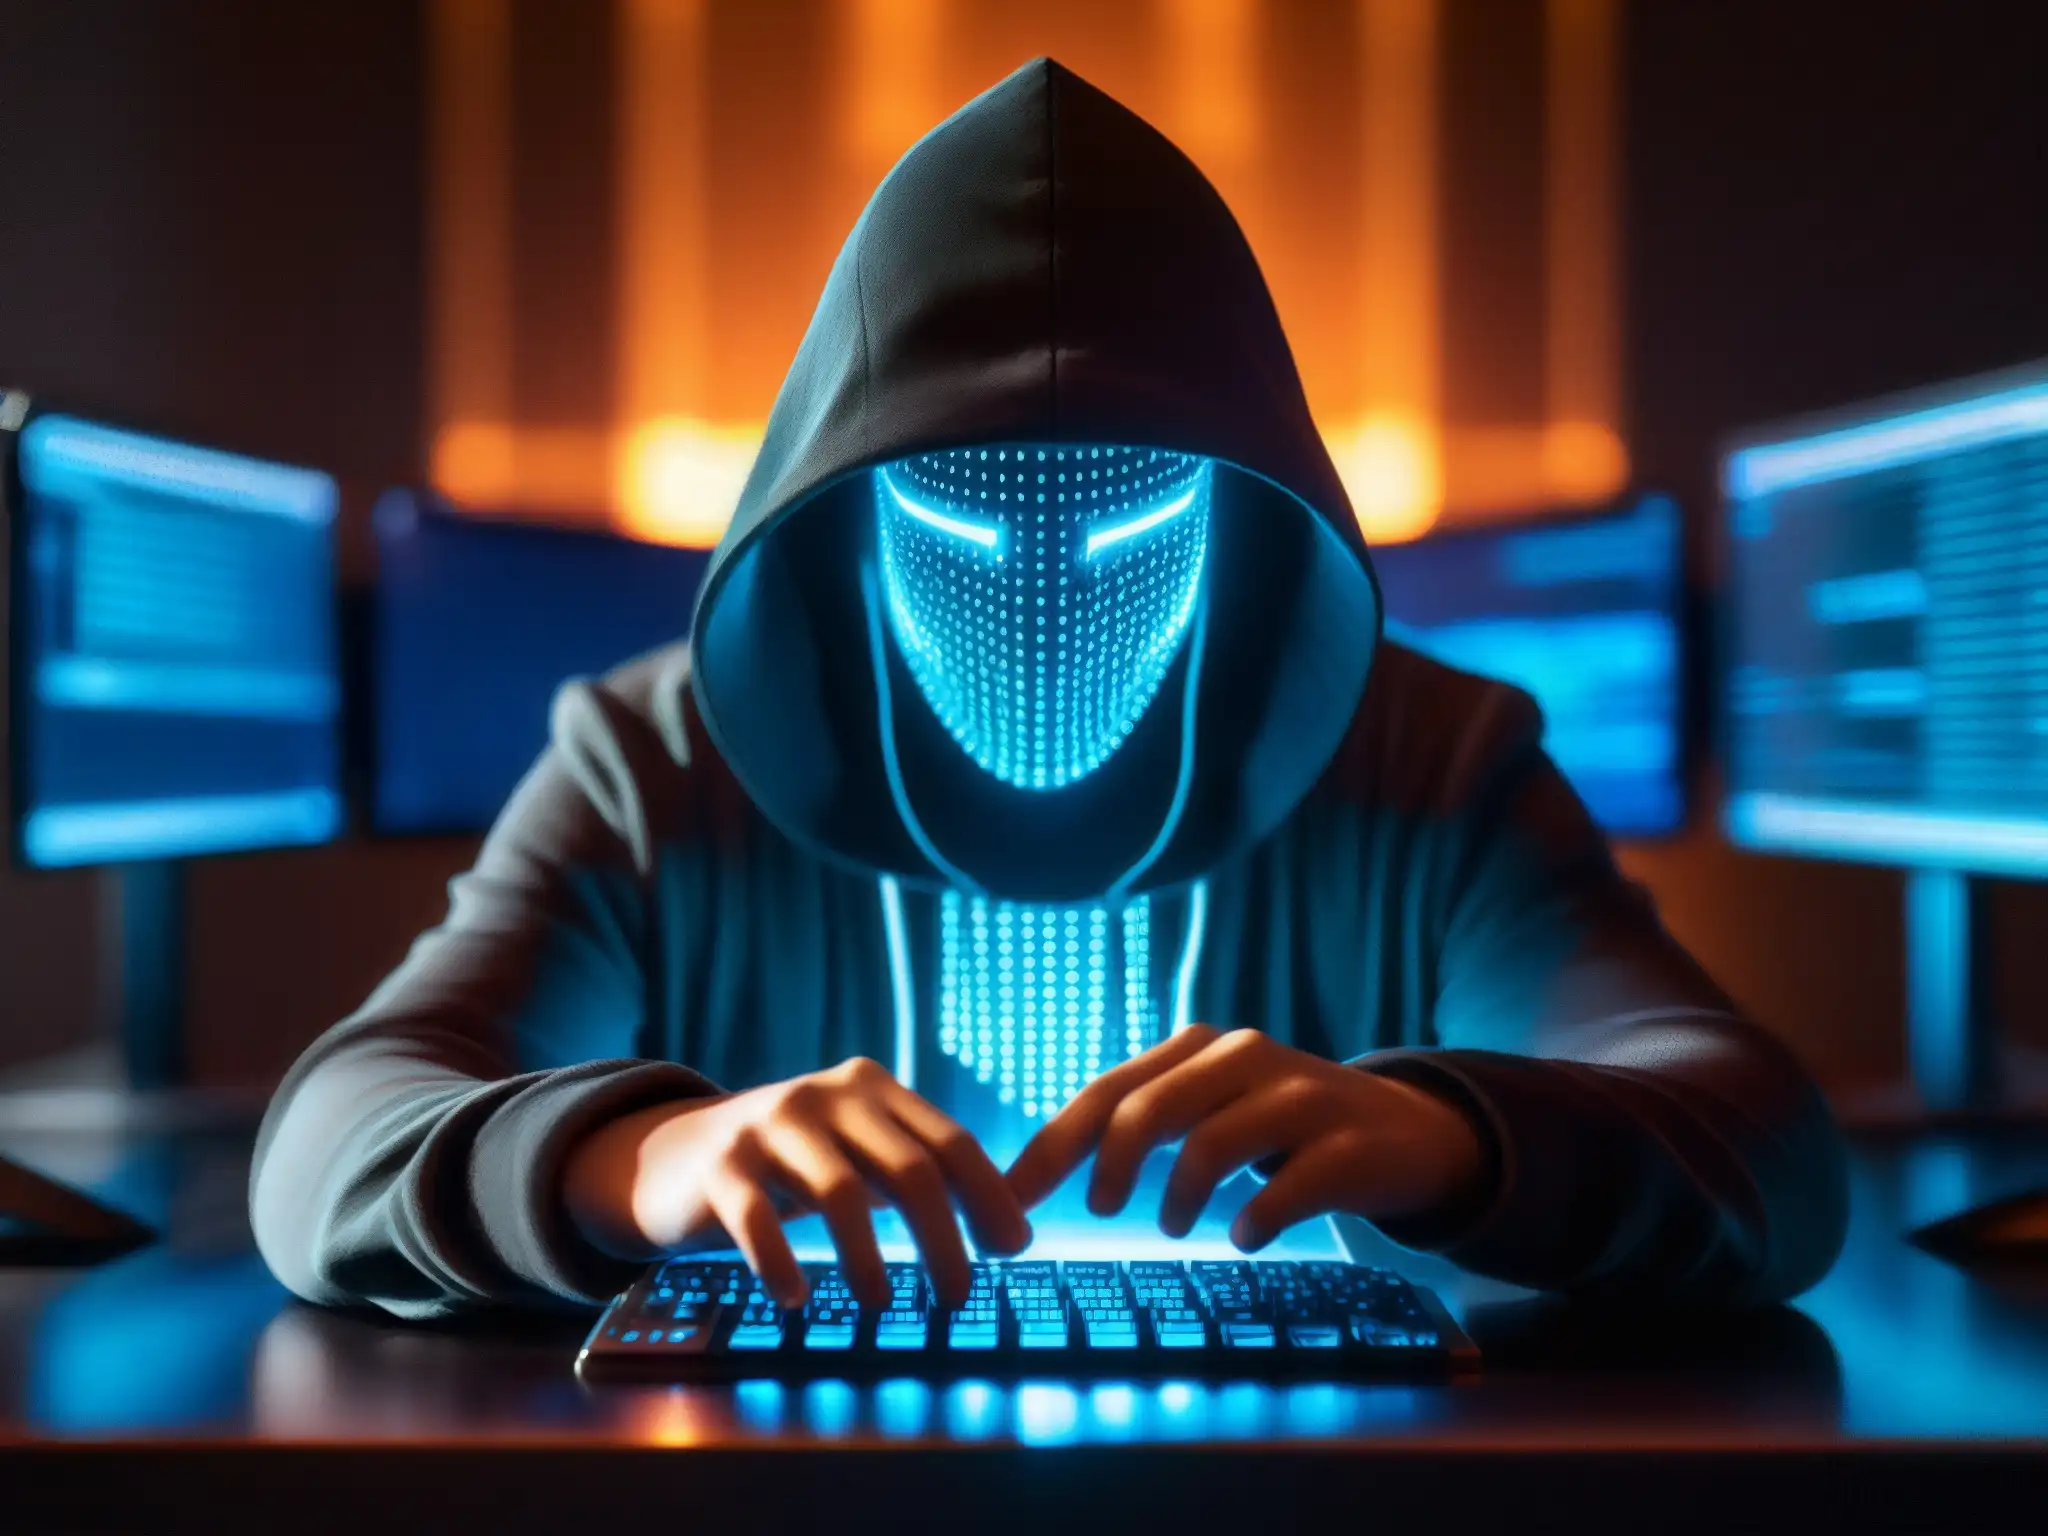 Un misterioso hacker, iluminado por pantallas de computadora, teclea con intensa concentración